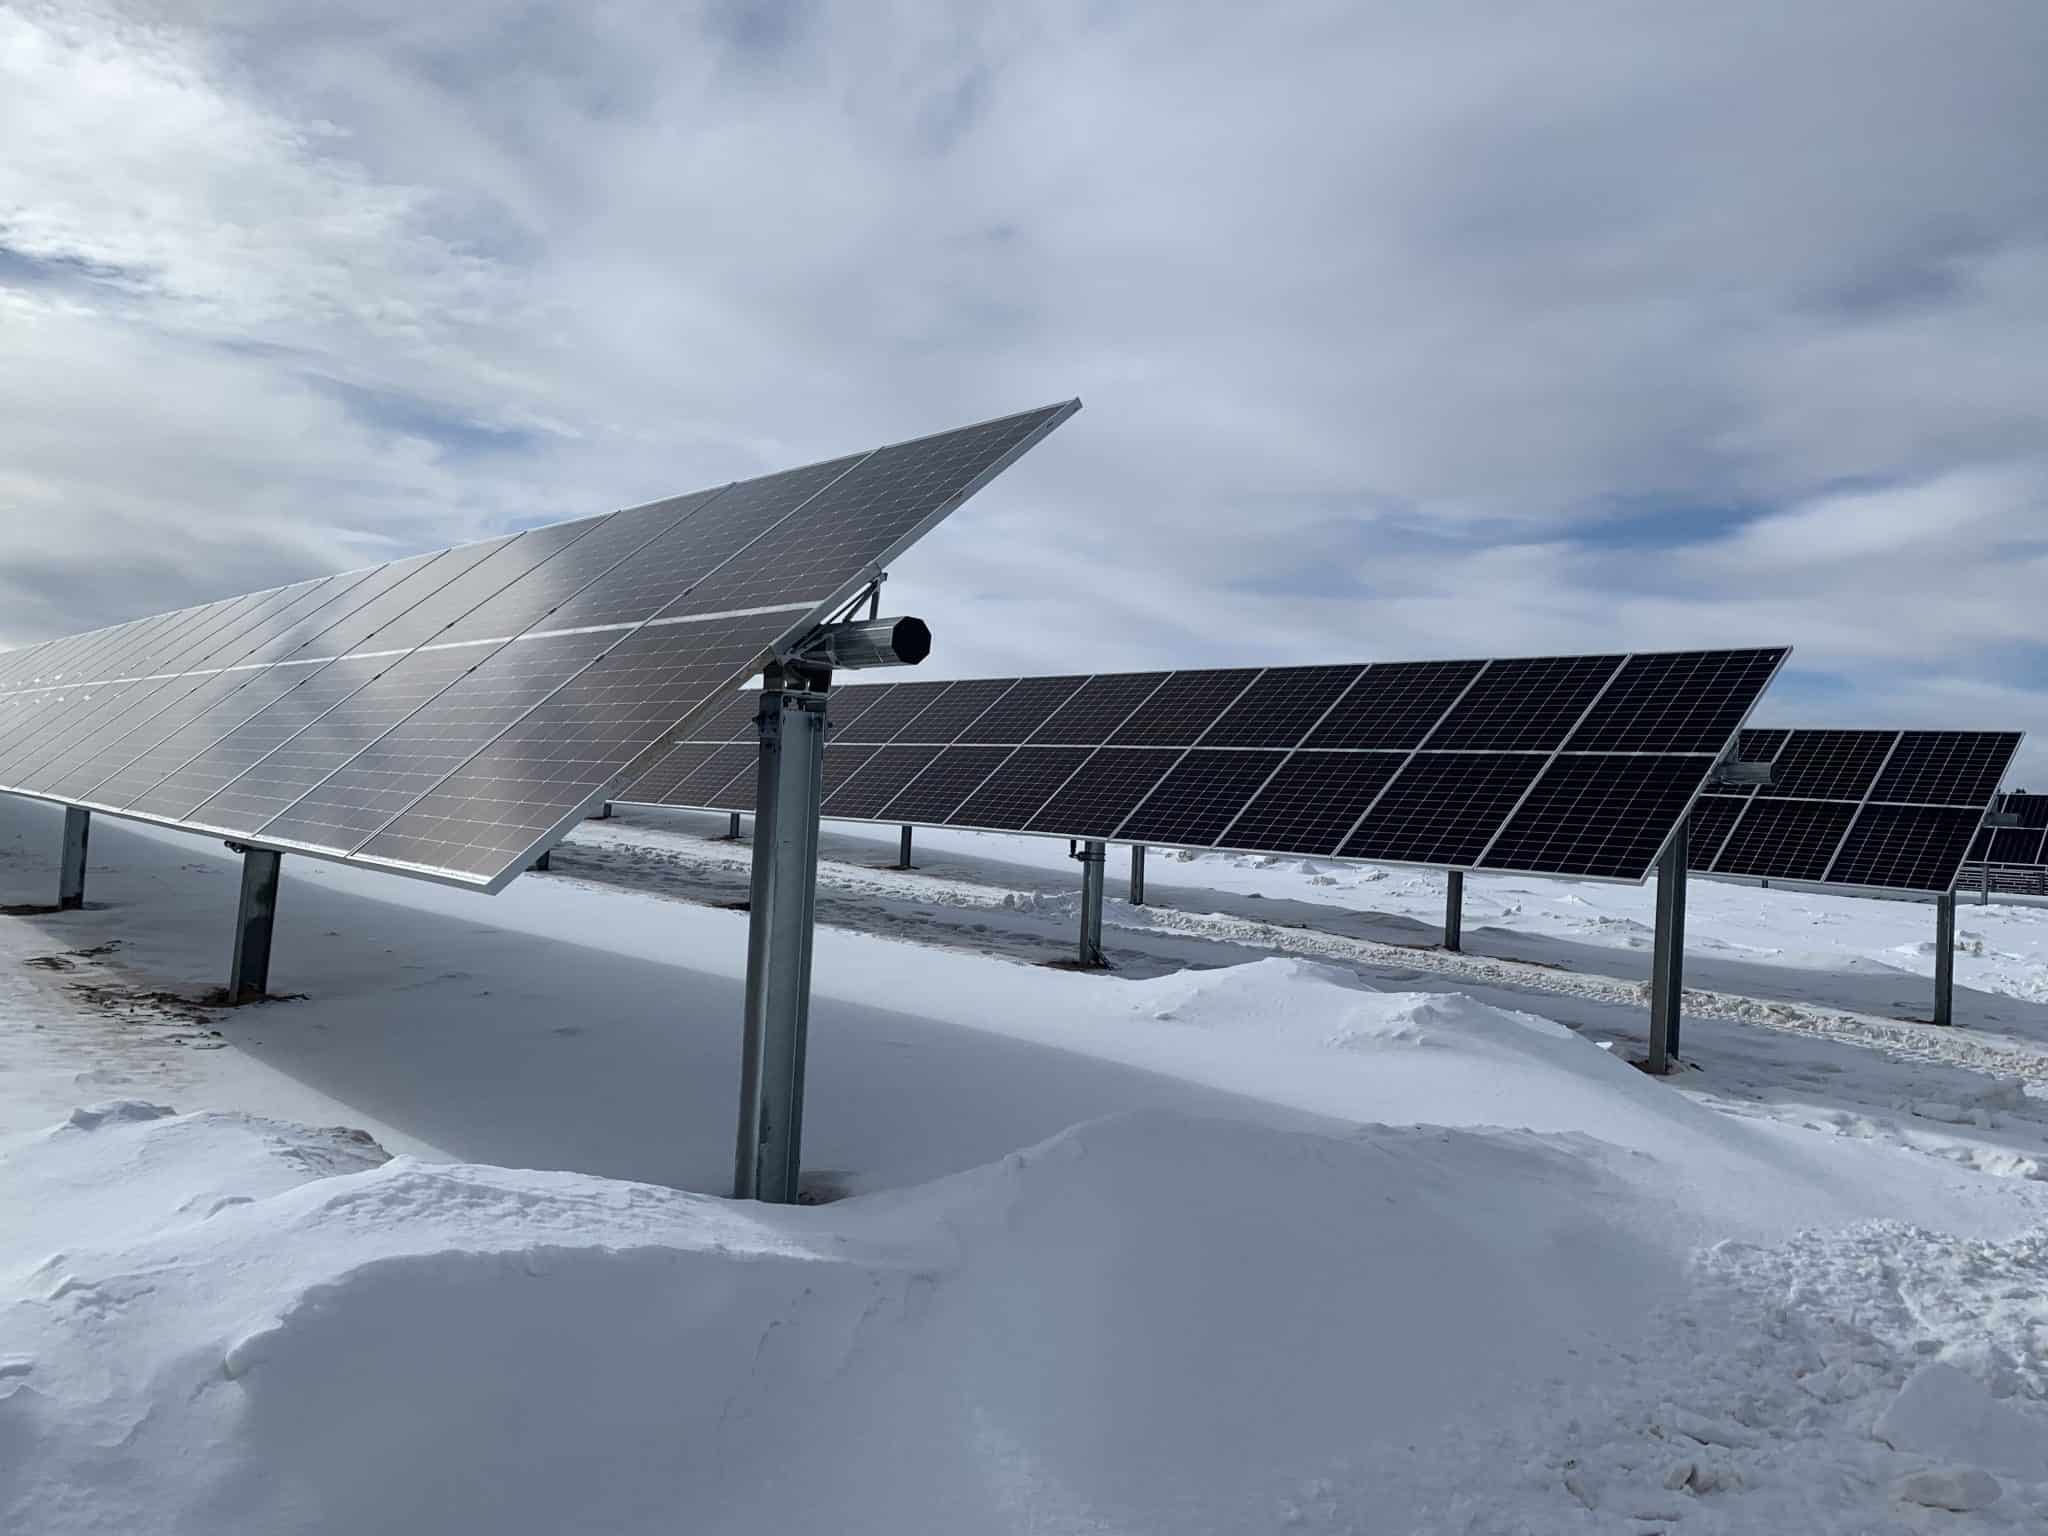 Hodag Solar Park begins generating power